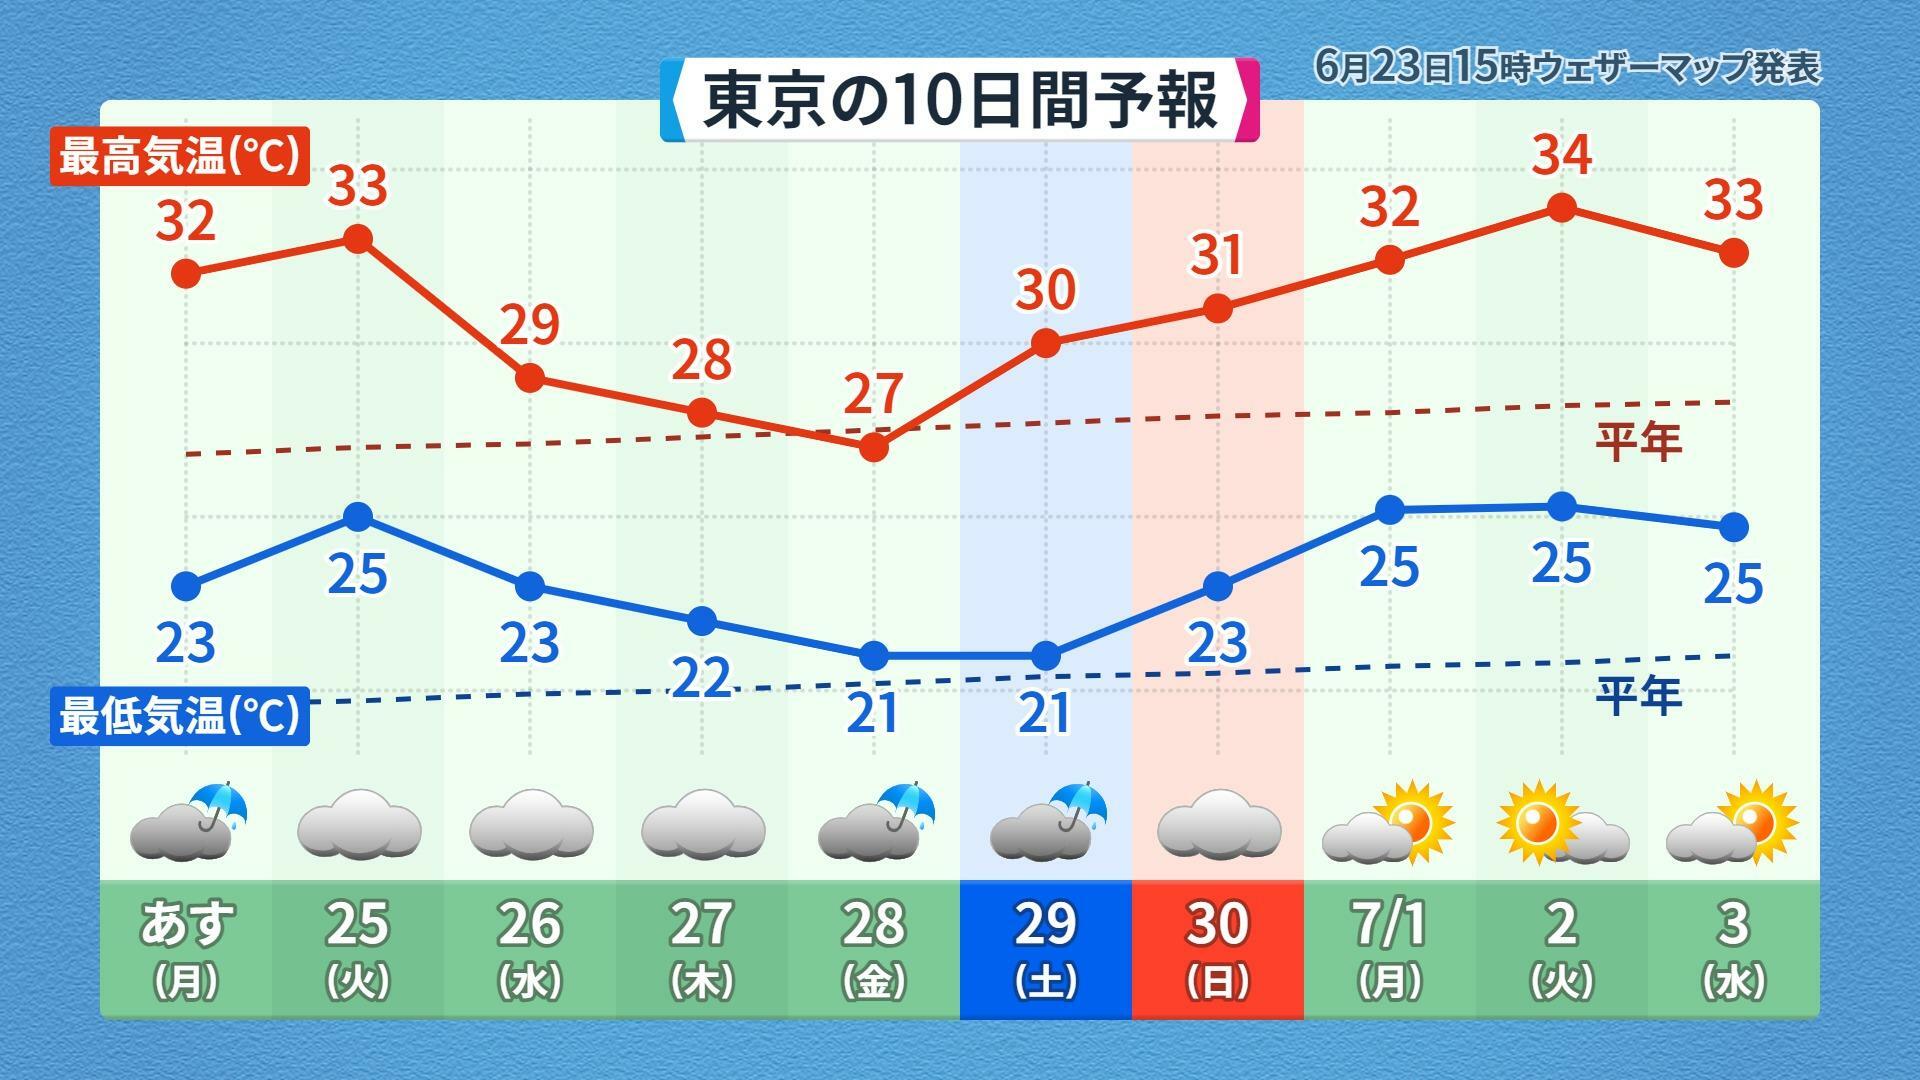 【東京】この先10日間の天気予報、ウェザーマップ作画